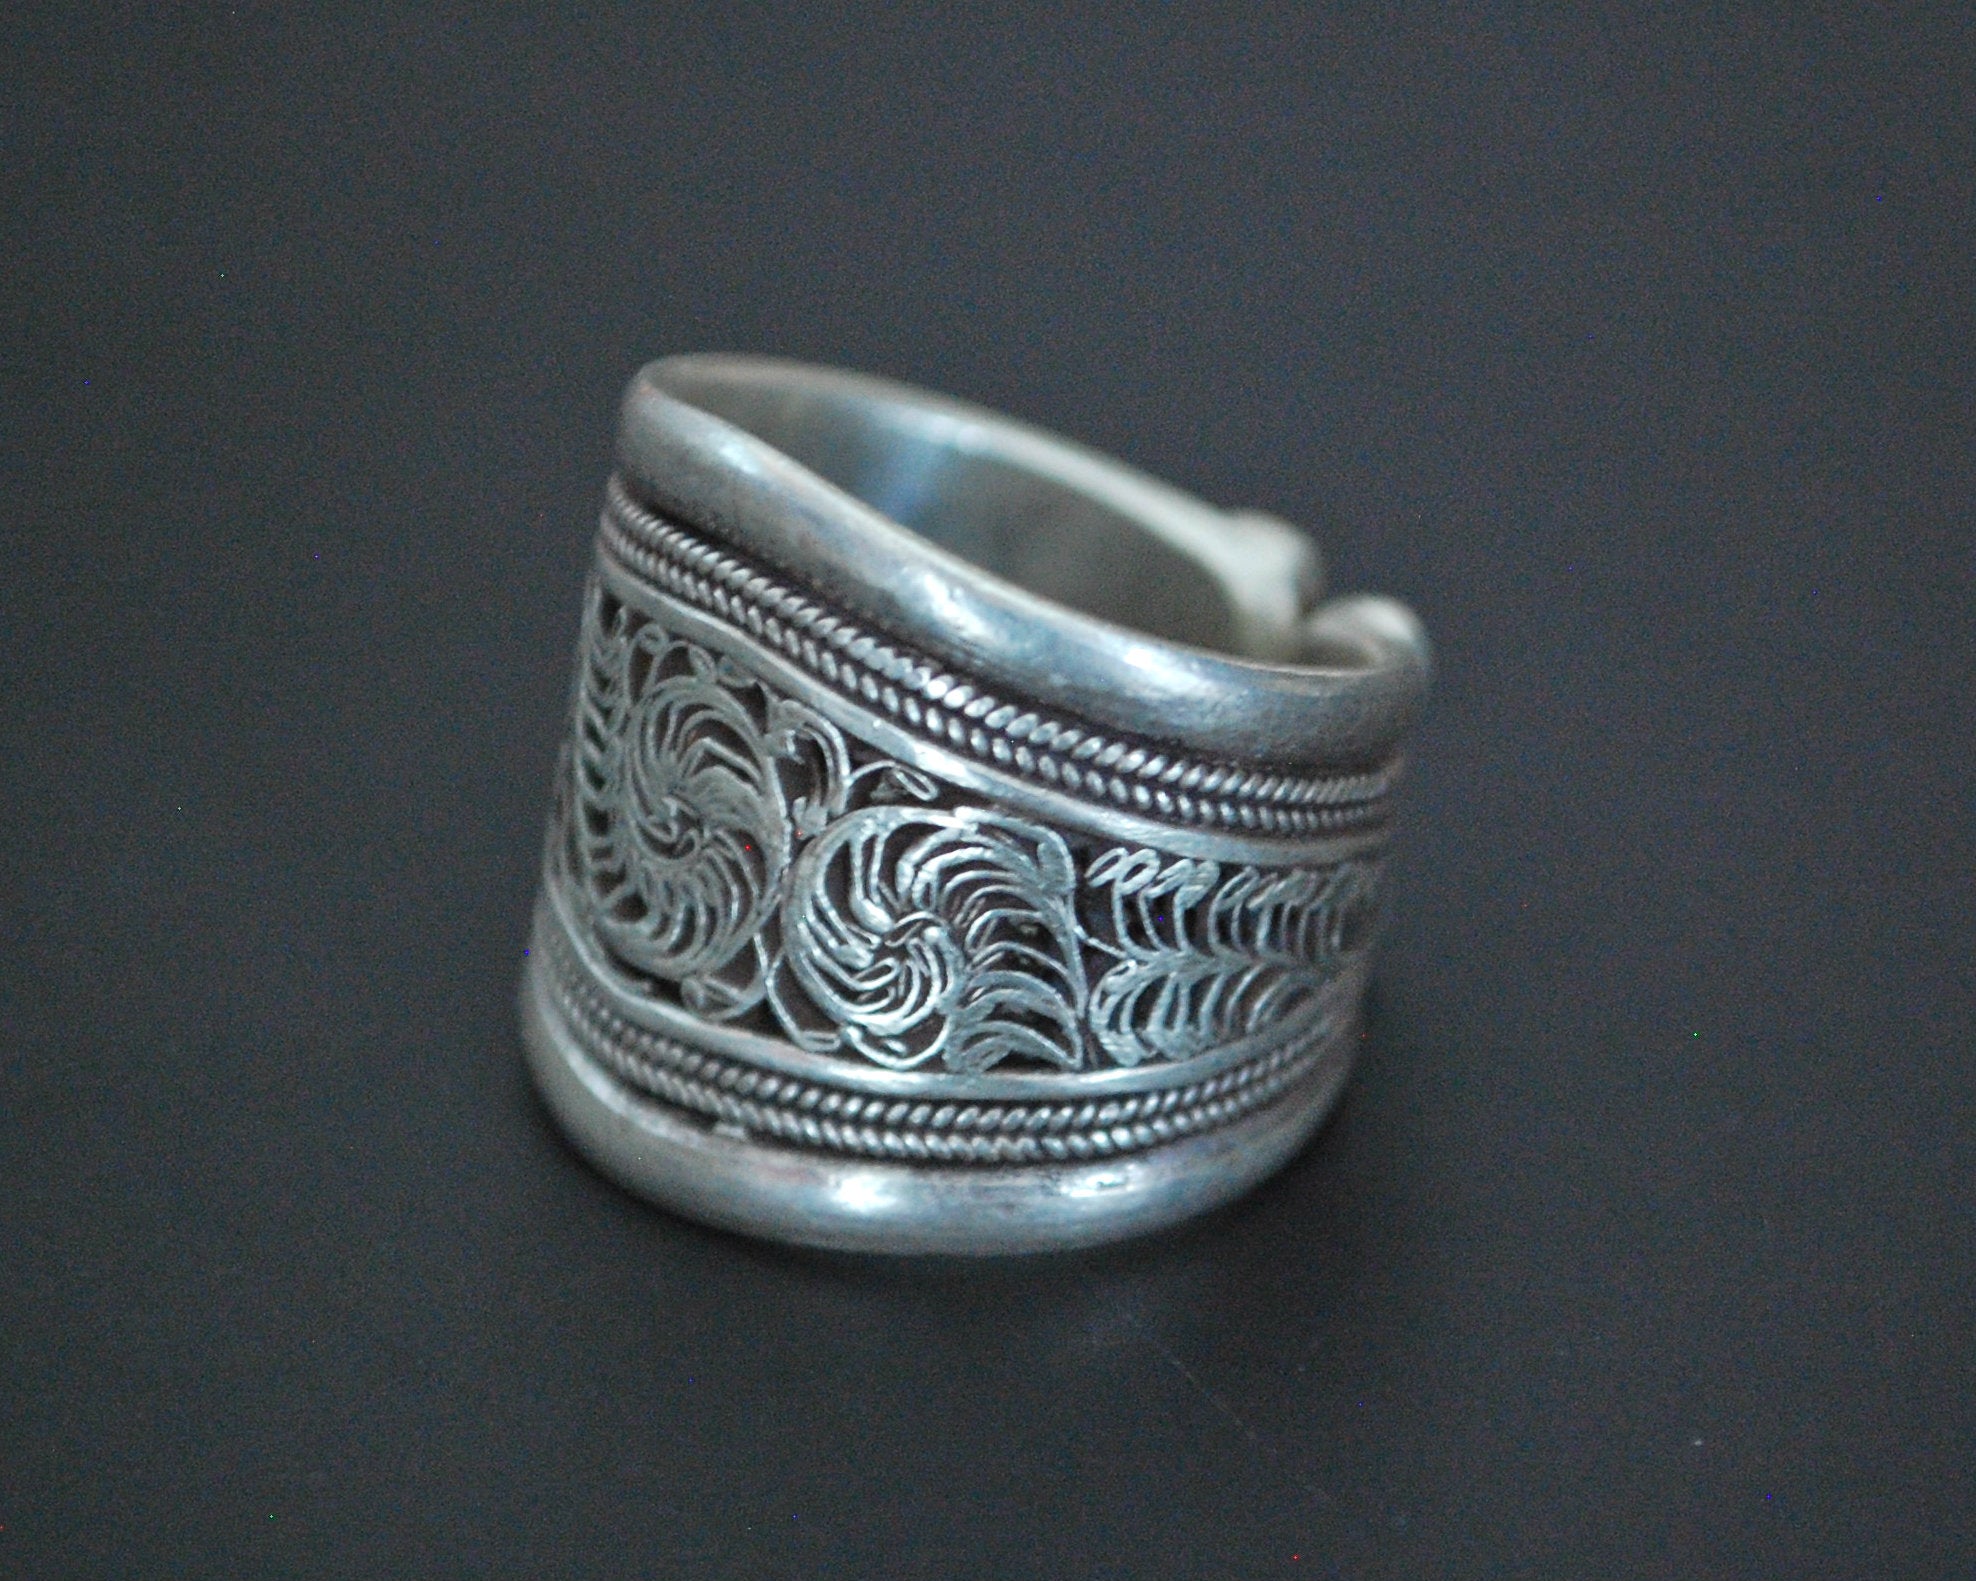 Nepali Filigree Band Ring